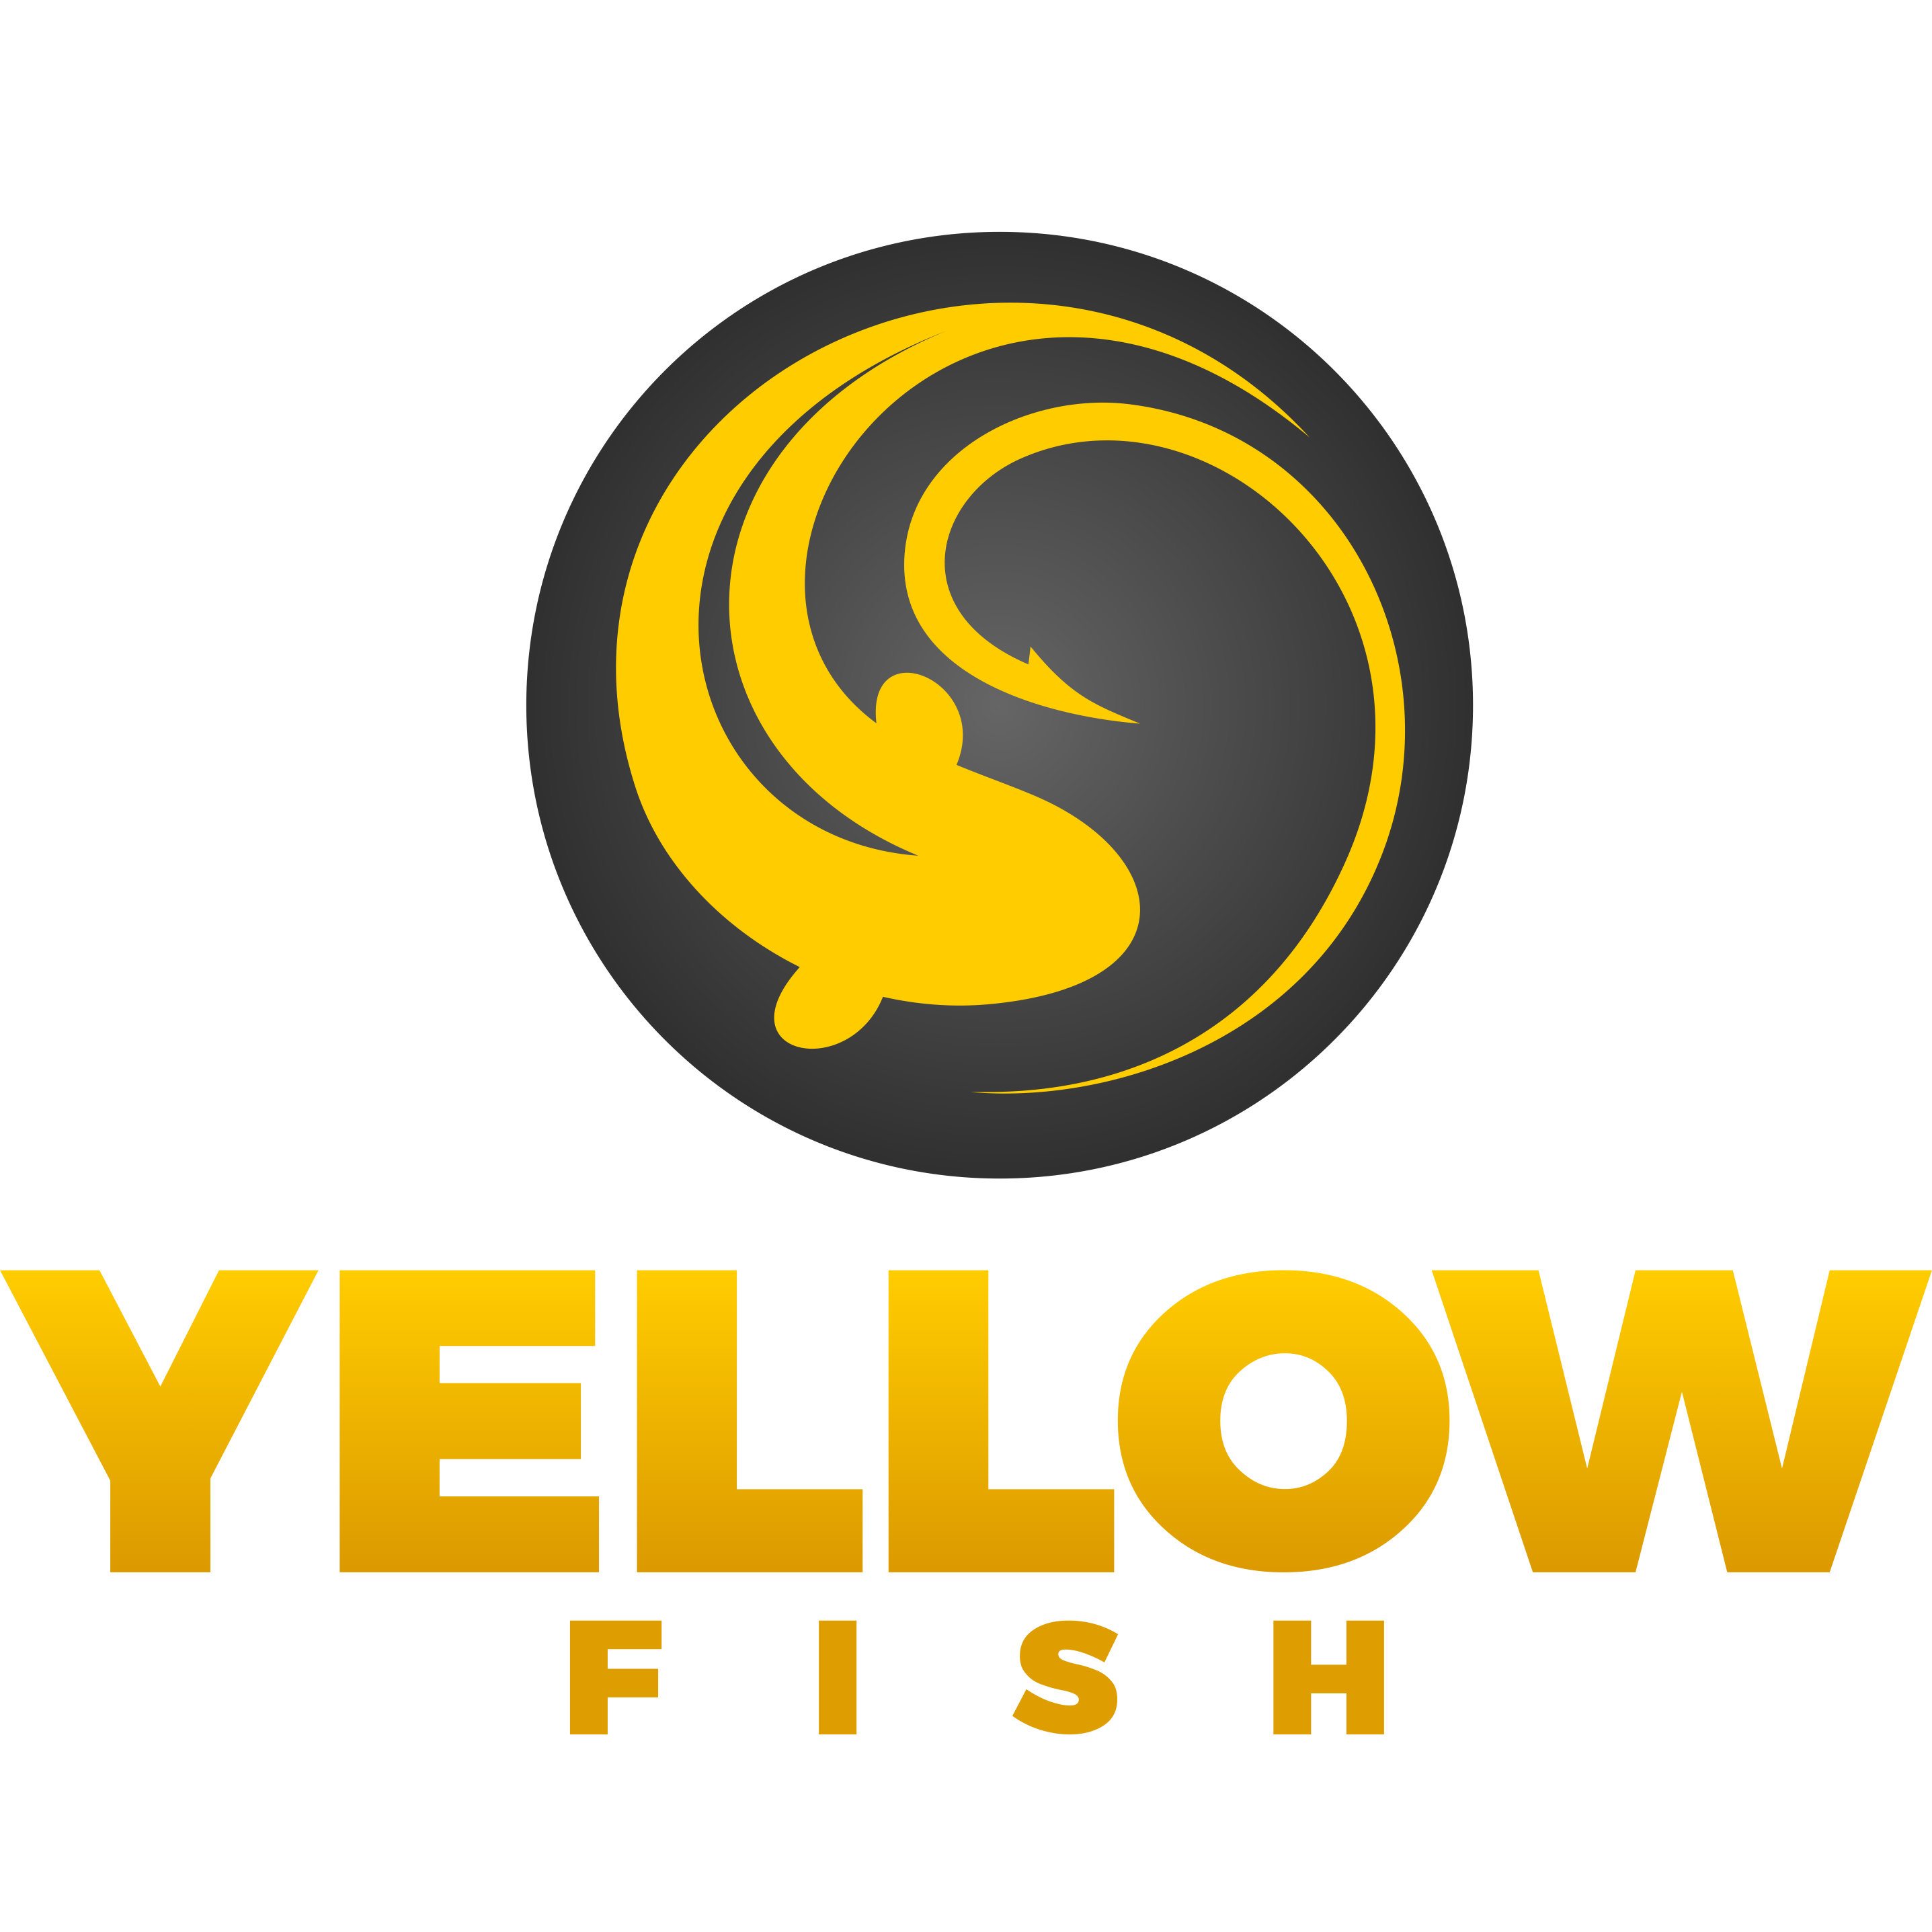 YELLOWFISH rybárske potreby - špecializovaný obchod na feeder